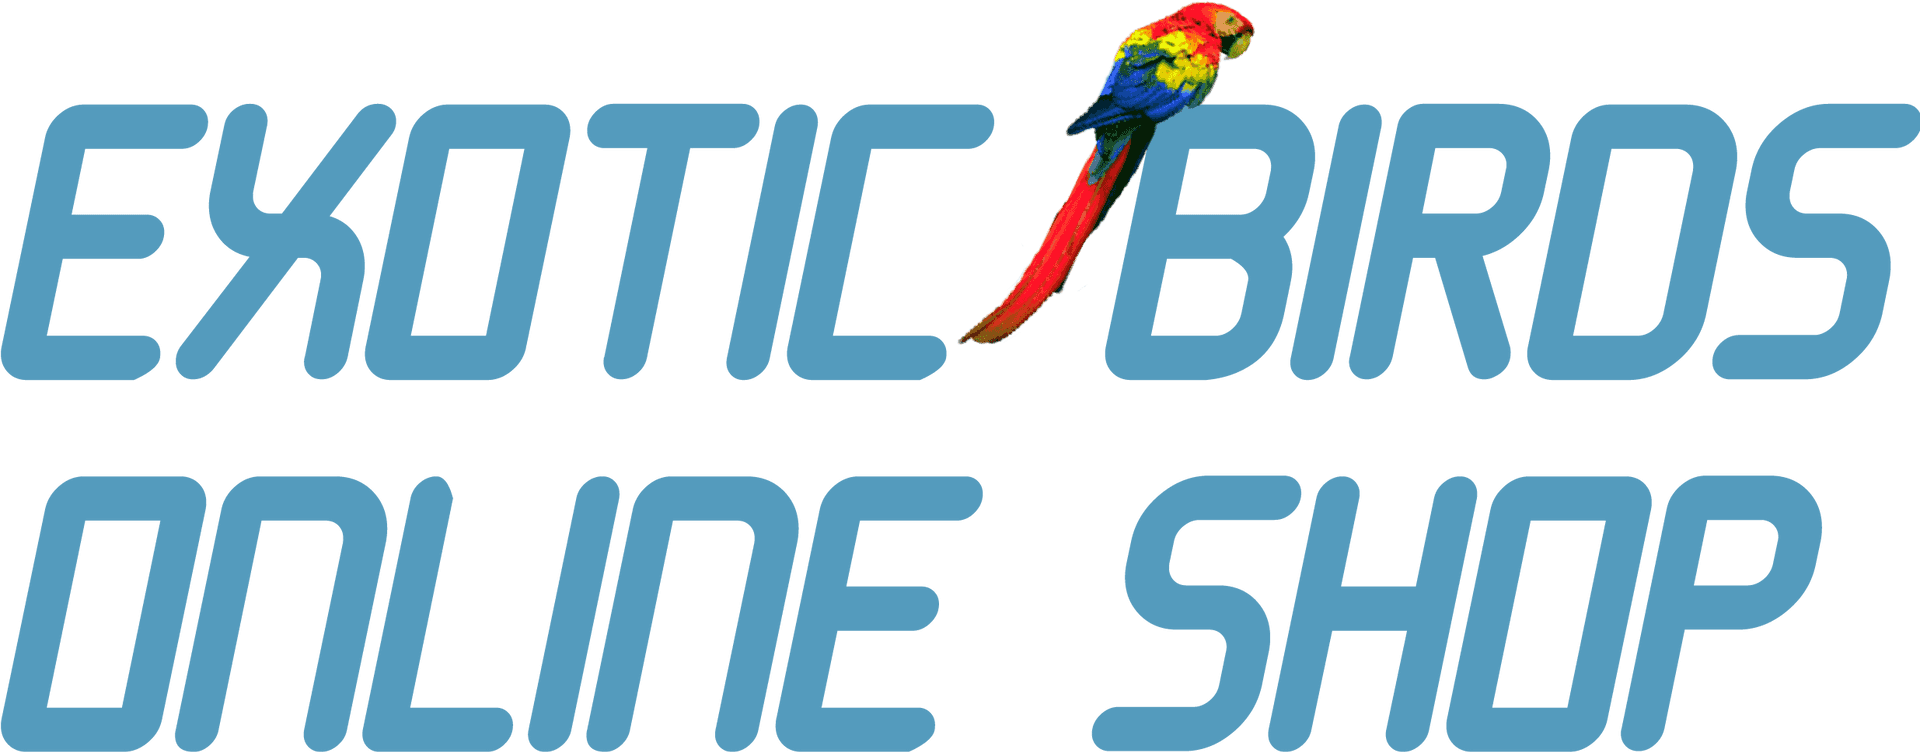 Exotic Birds Online Shop Logo PNG image